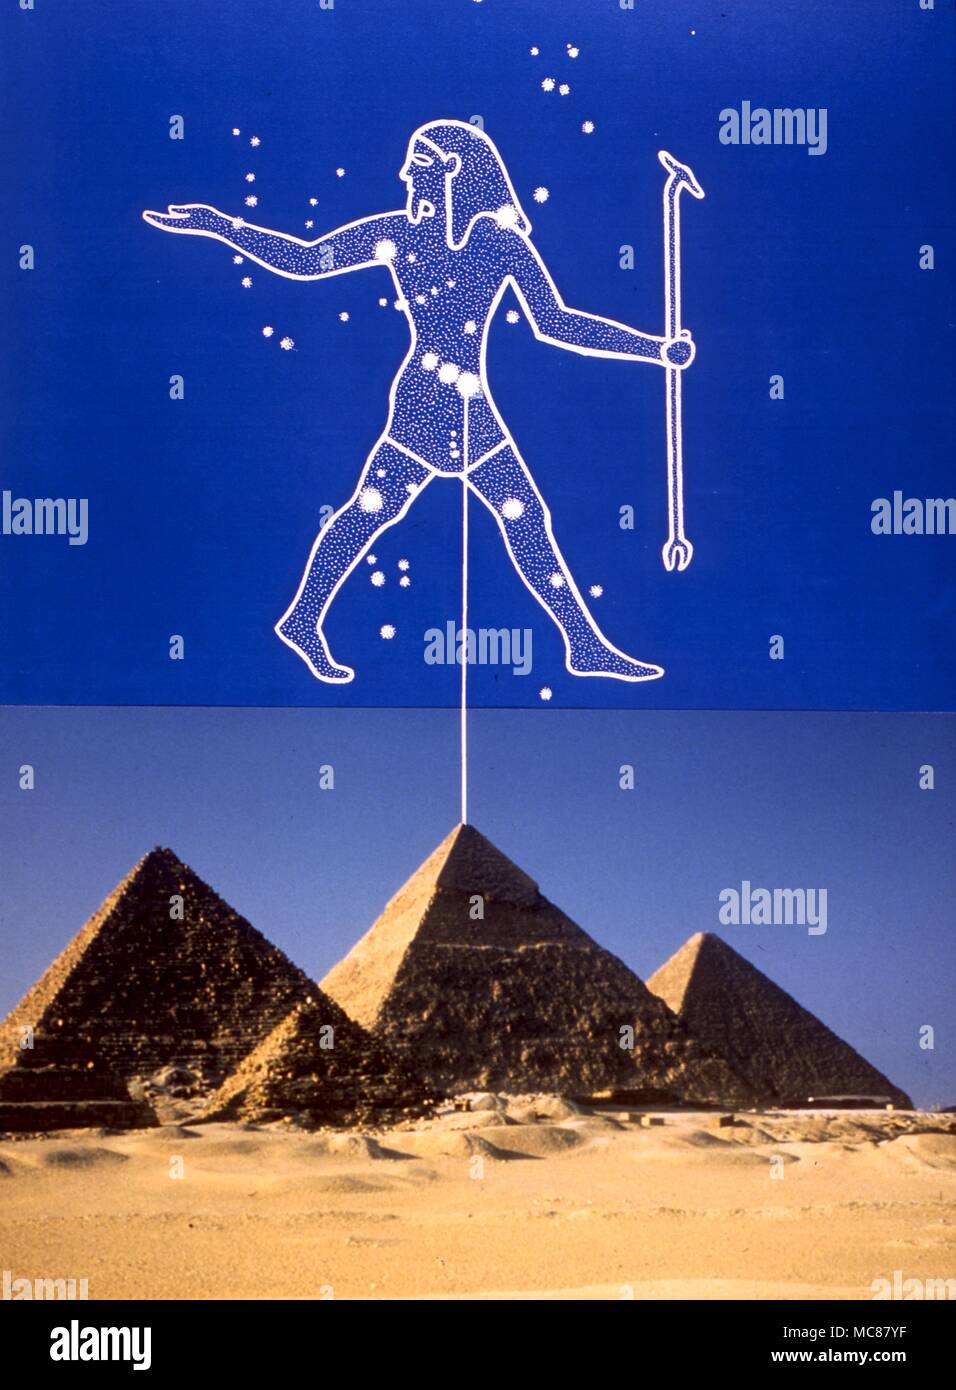 L'astrologie égyptienne. L'orientation des pyramides de Gizah aux trois étoiles de la ceinture d'Orion Banque D'Images